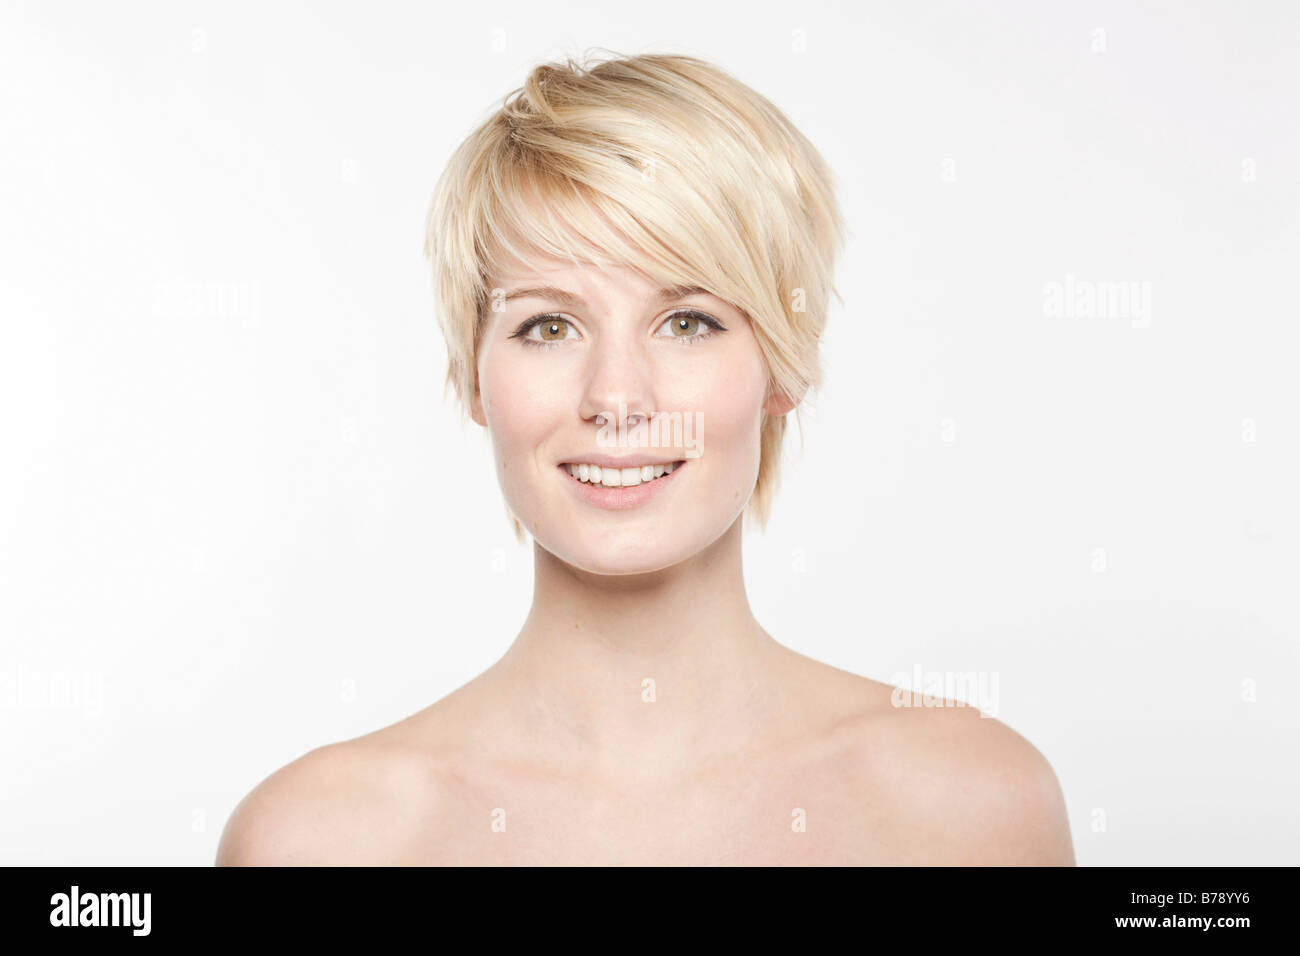 Jeune femme blonde aux cheveux courts en souriant à la caméra, de façon conviviale Banque D'Images